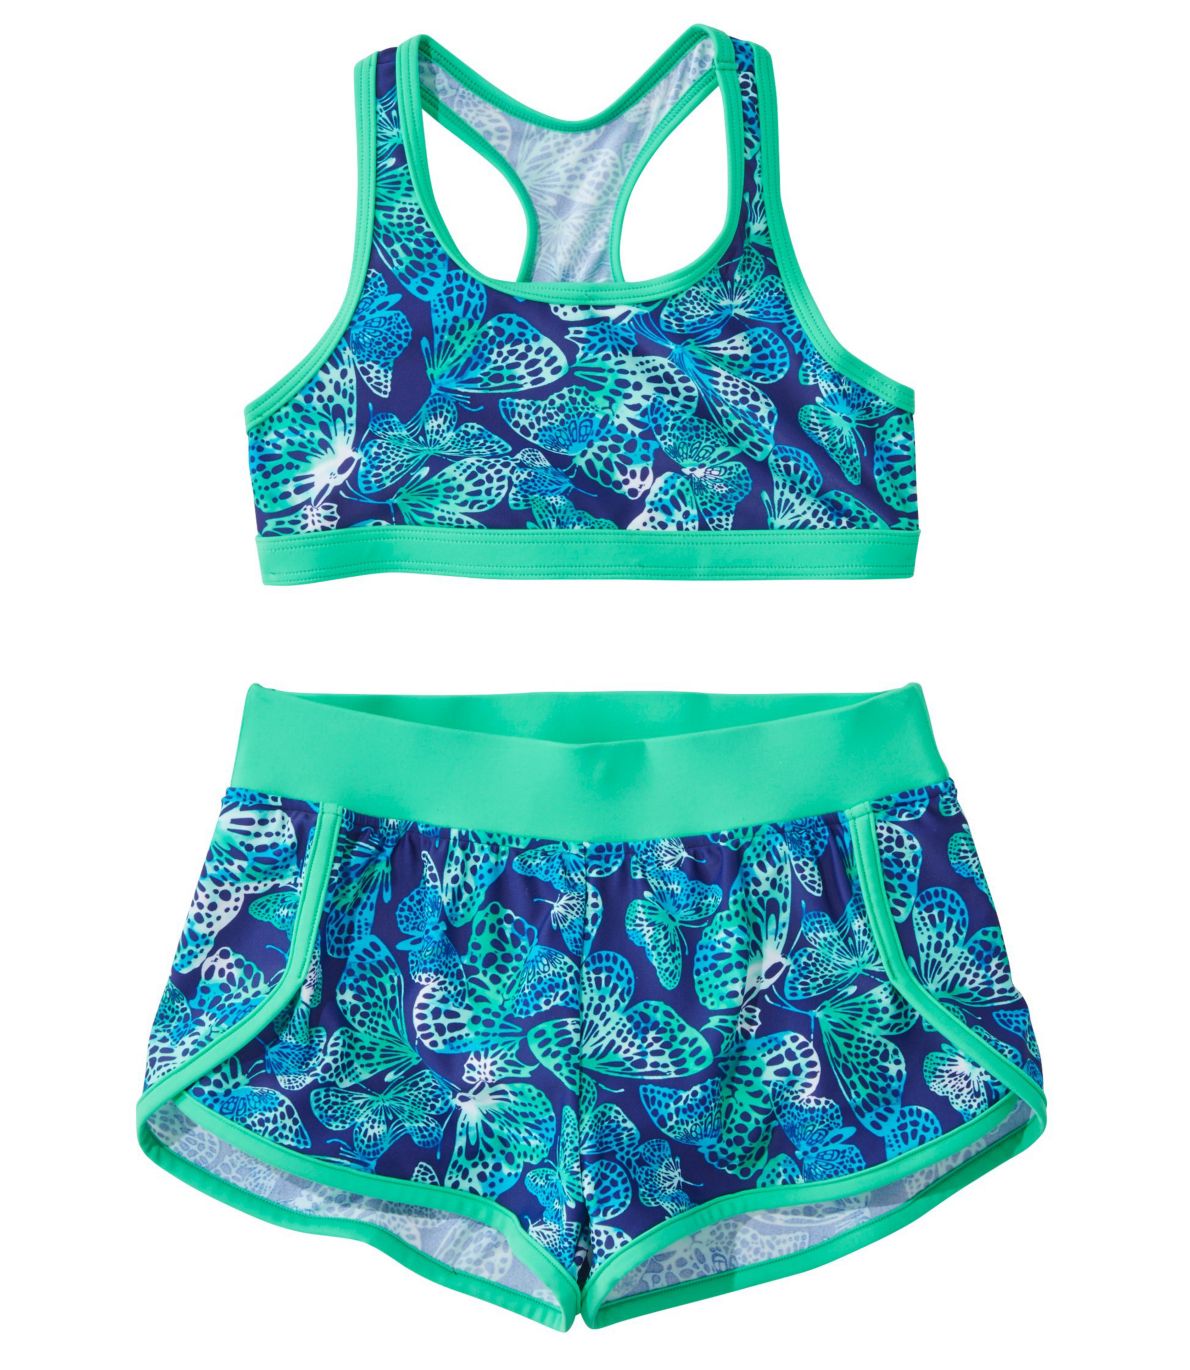 Girls' BeanSport Short Set Swimsuit, Print